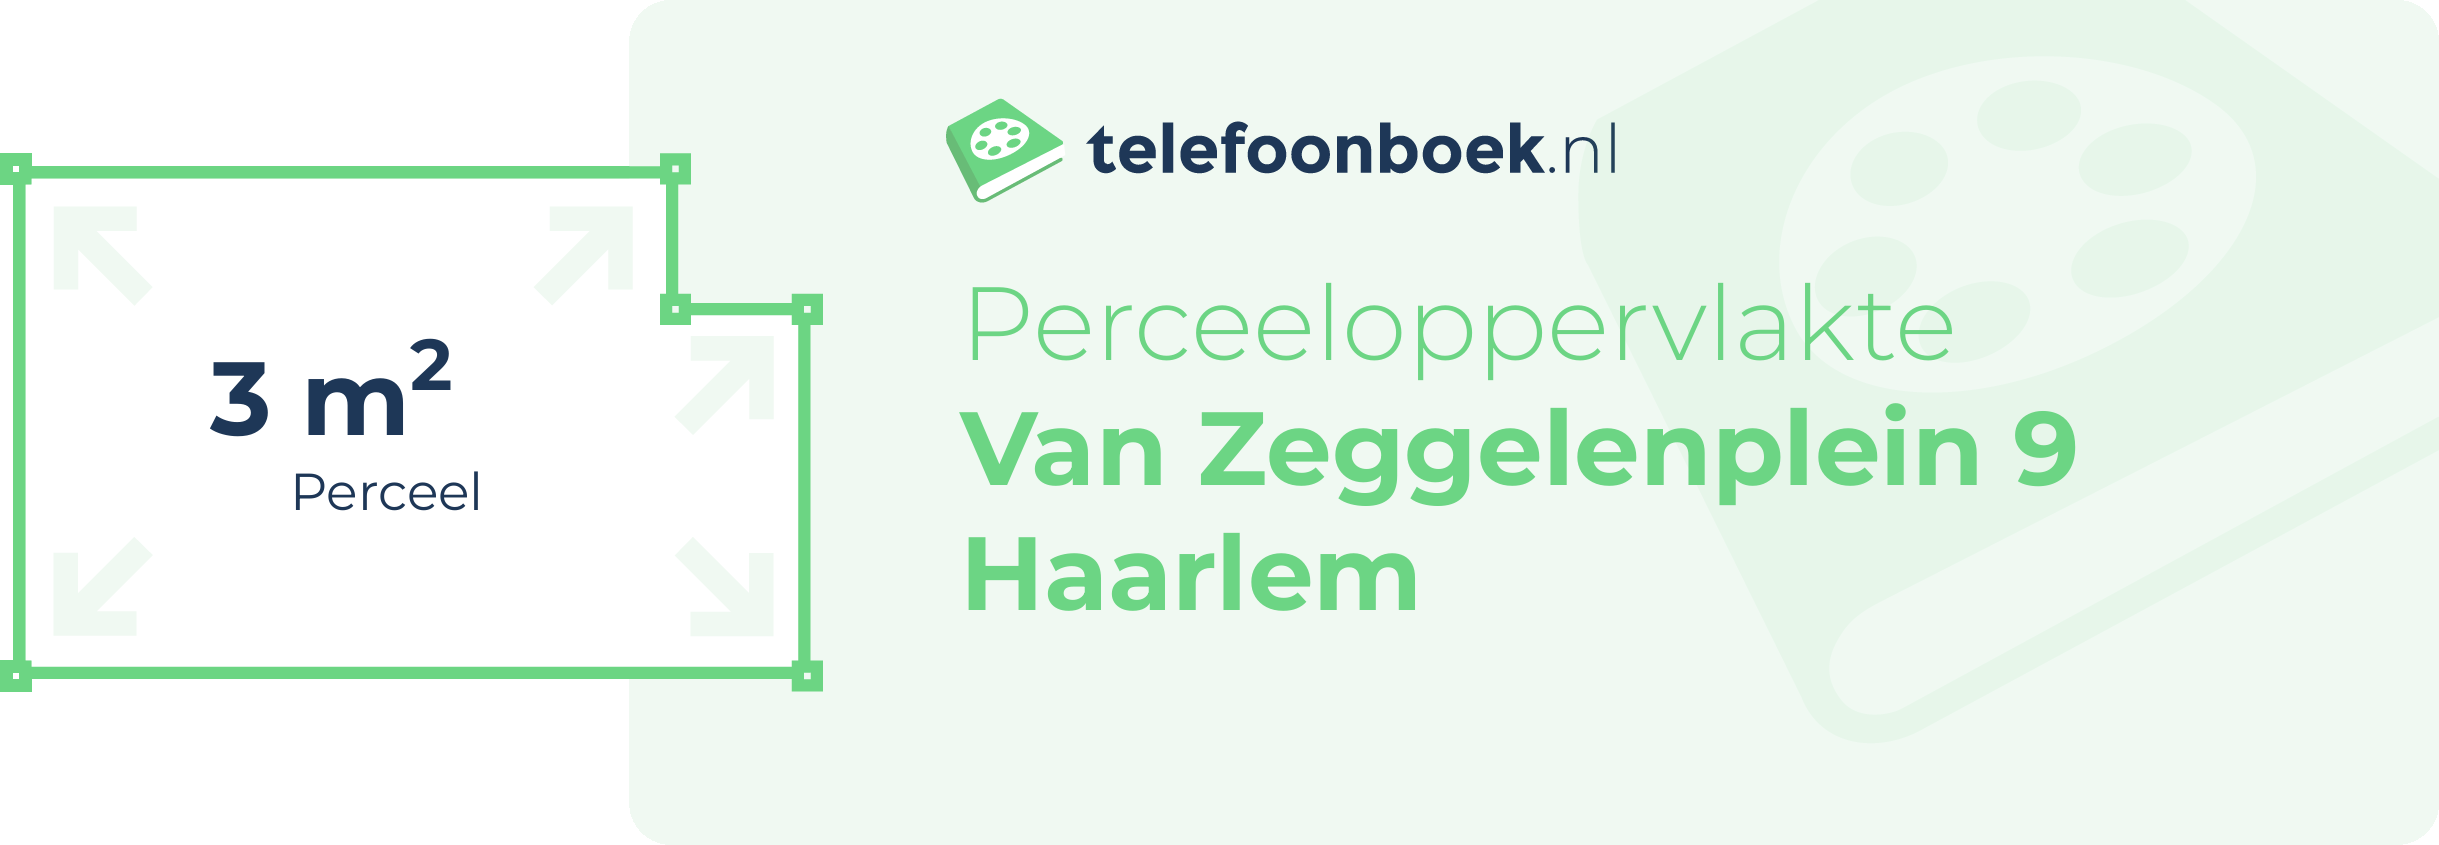 Perceeloppervlakte Van Zeggelenplein 9 Haarlem